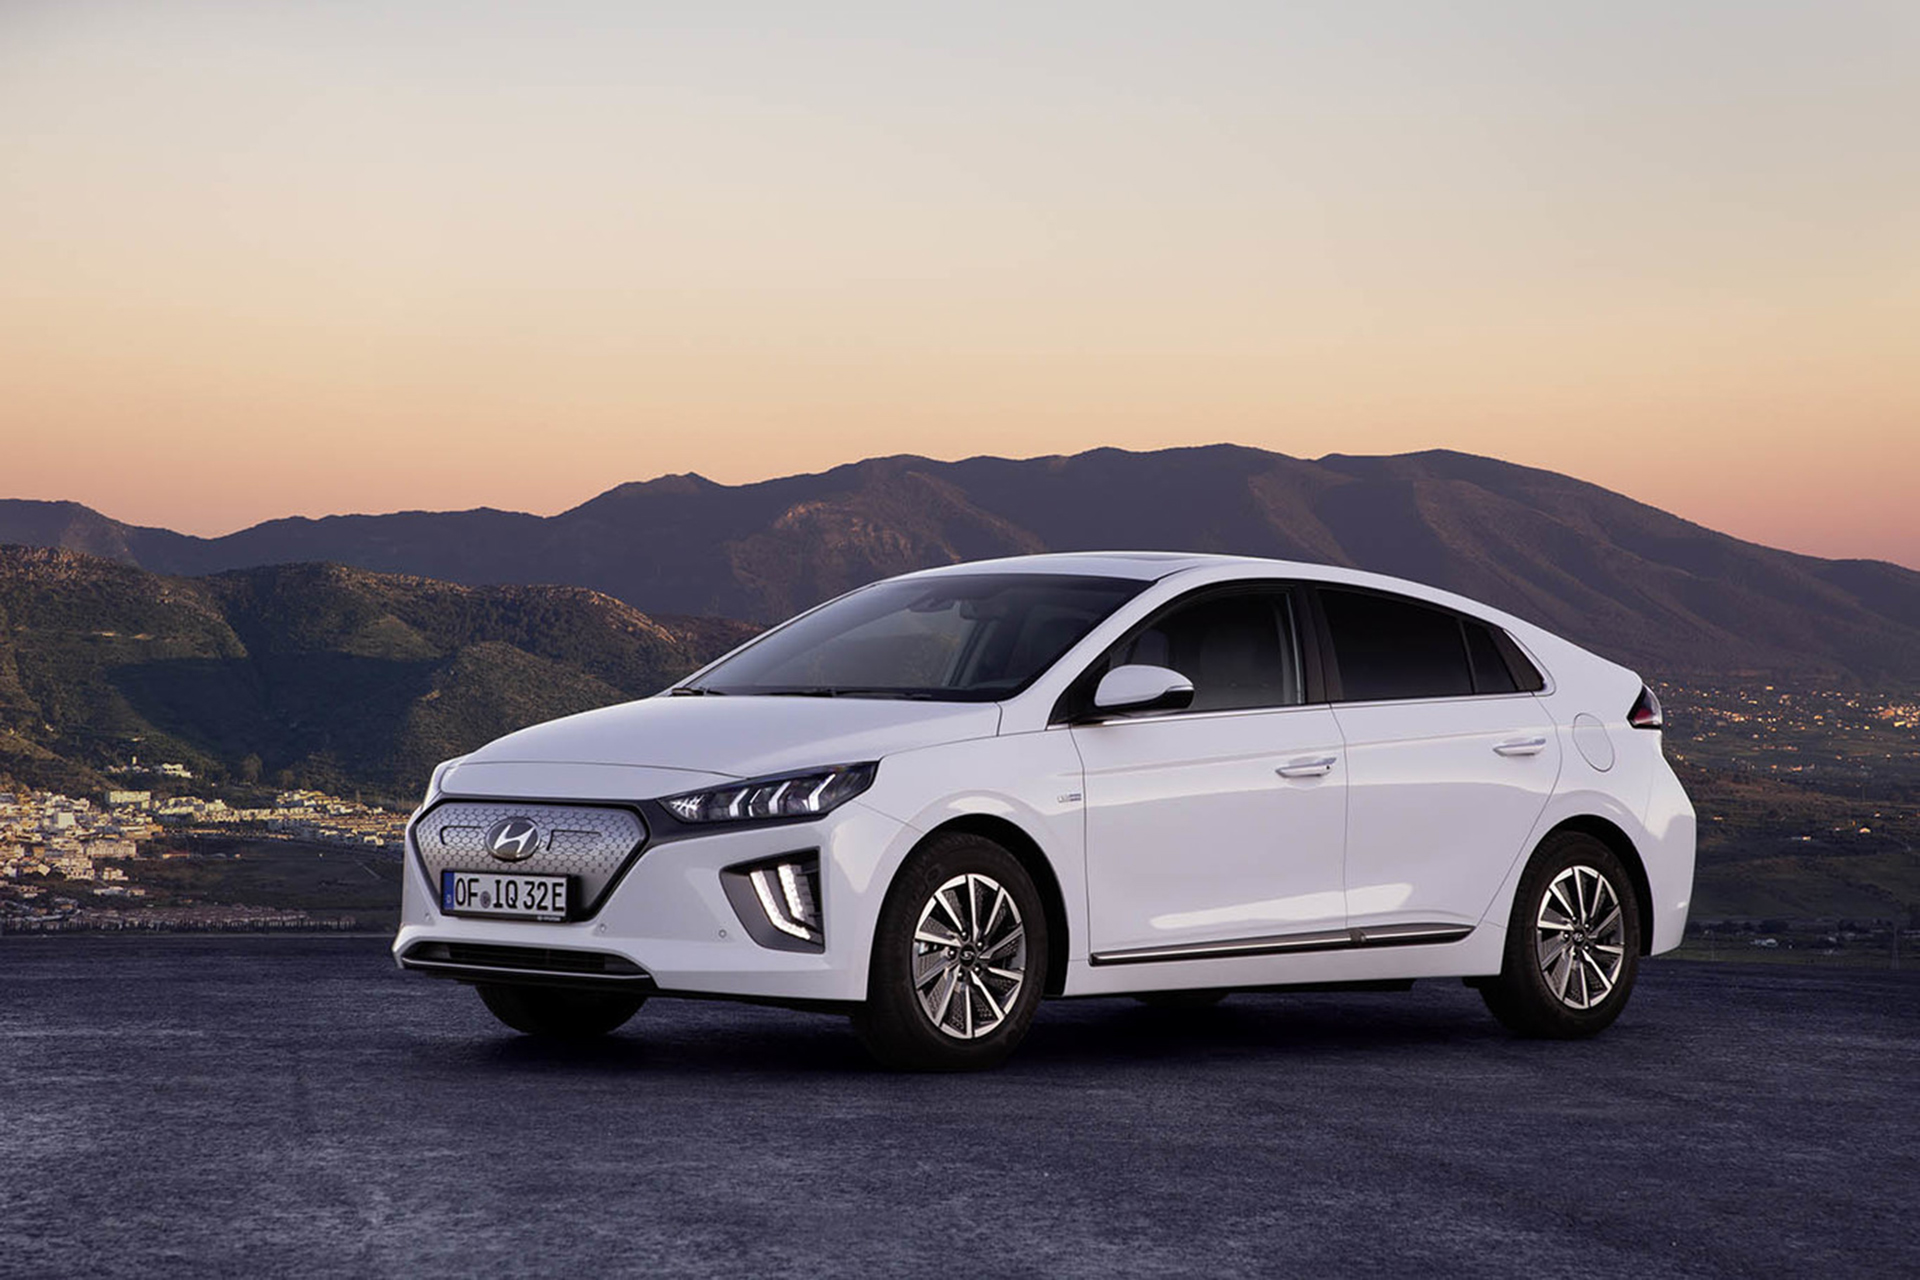 Modelos como el Hyundai IONIQ Eléctrico continúan ofreciendo unas importantes cifras de ventas